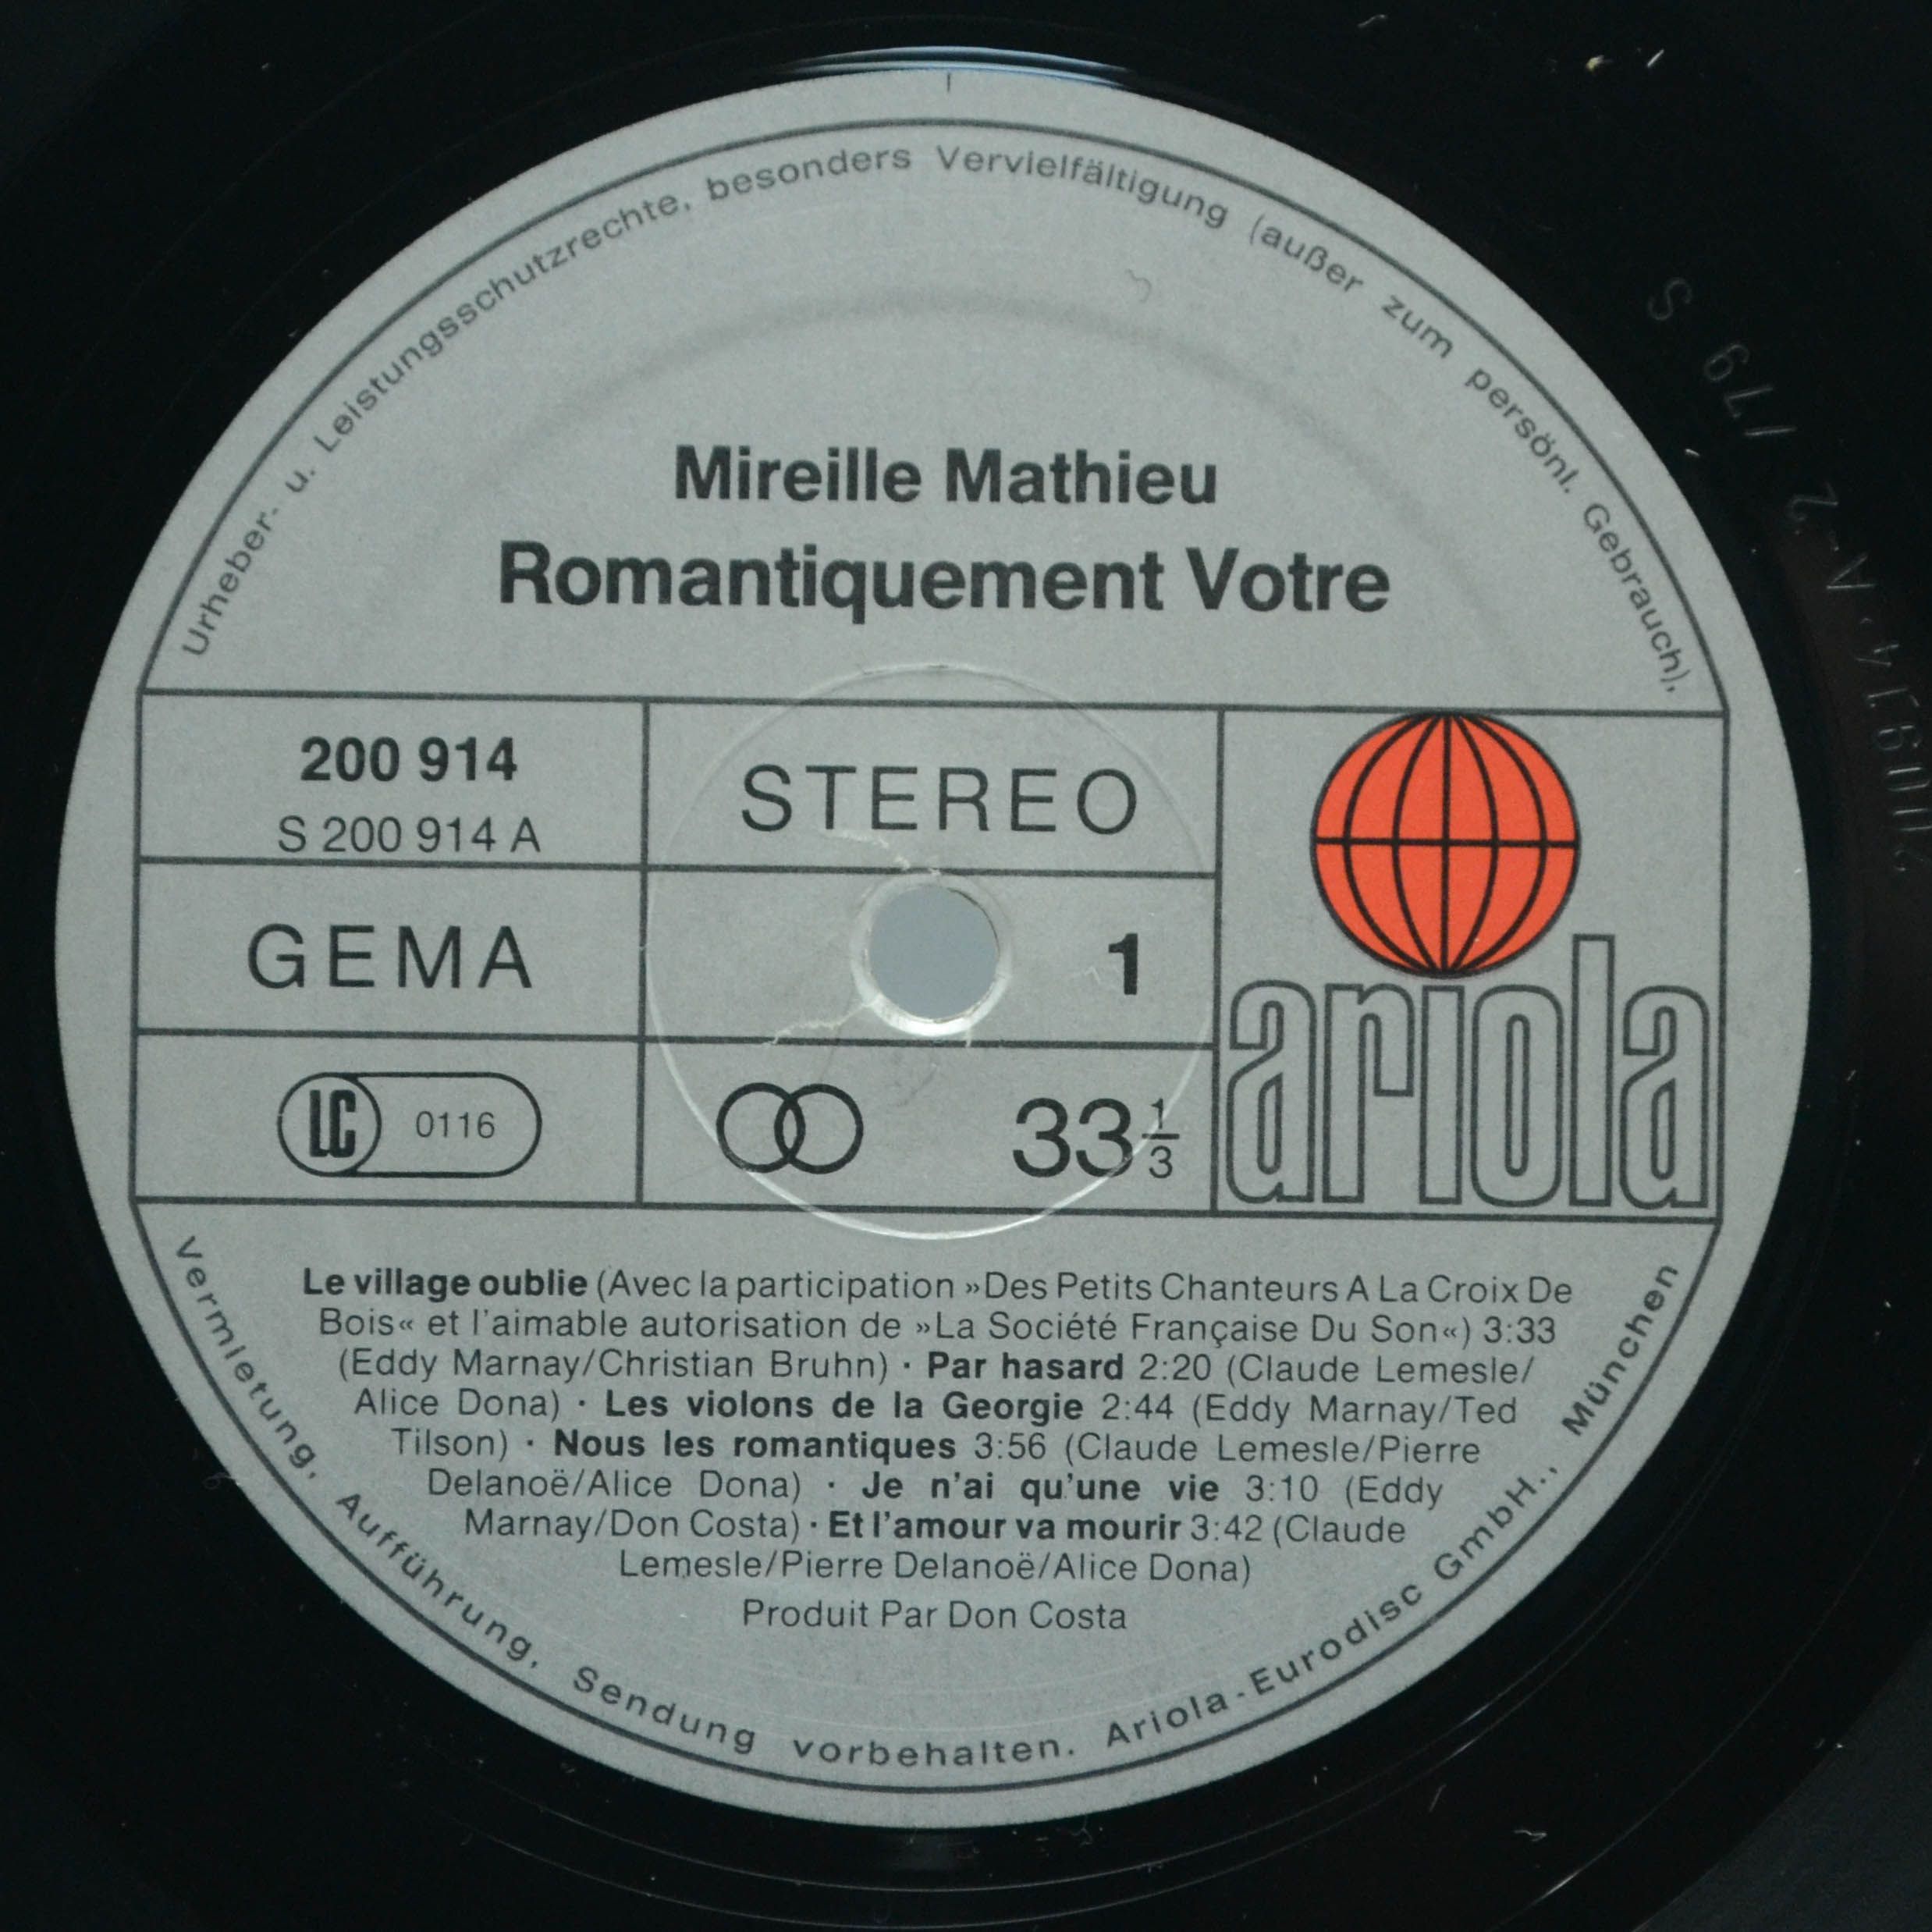 Mireille Mathieu — Romantiquement Votre...Un Enfant Viendra, 1979